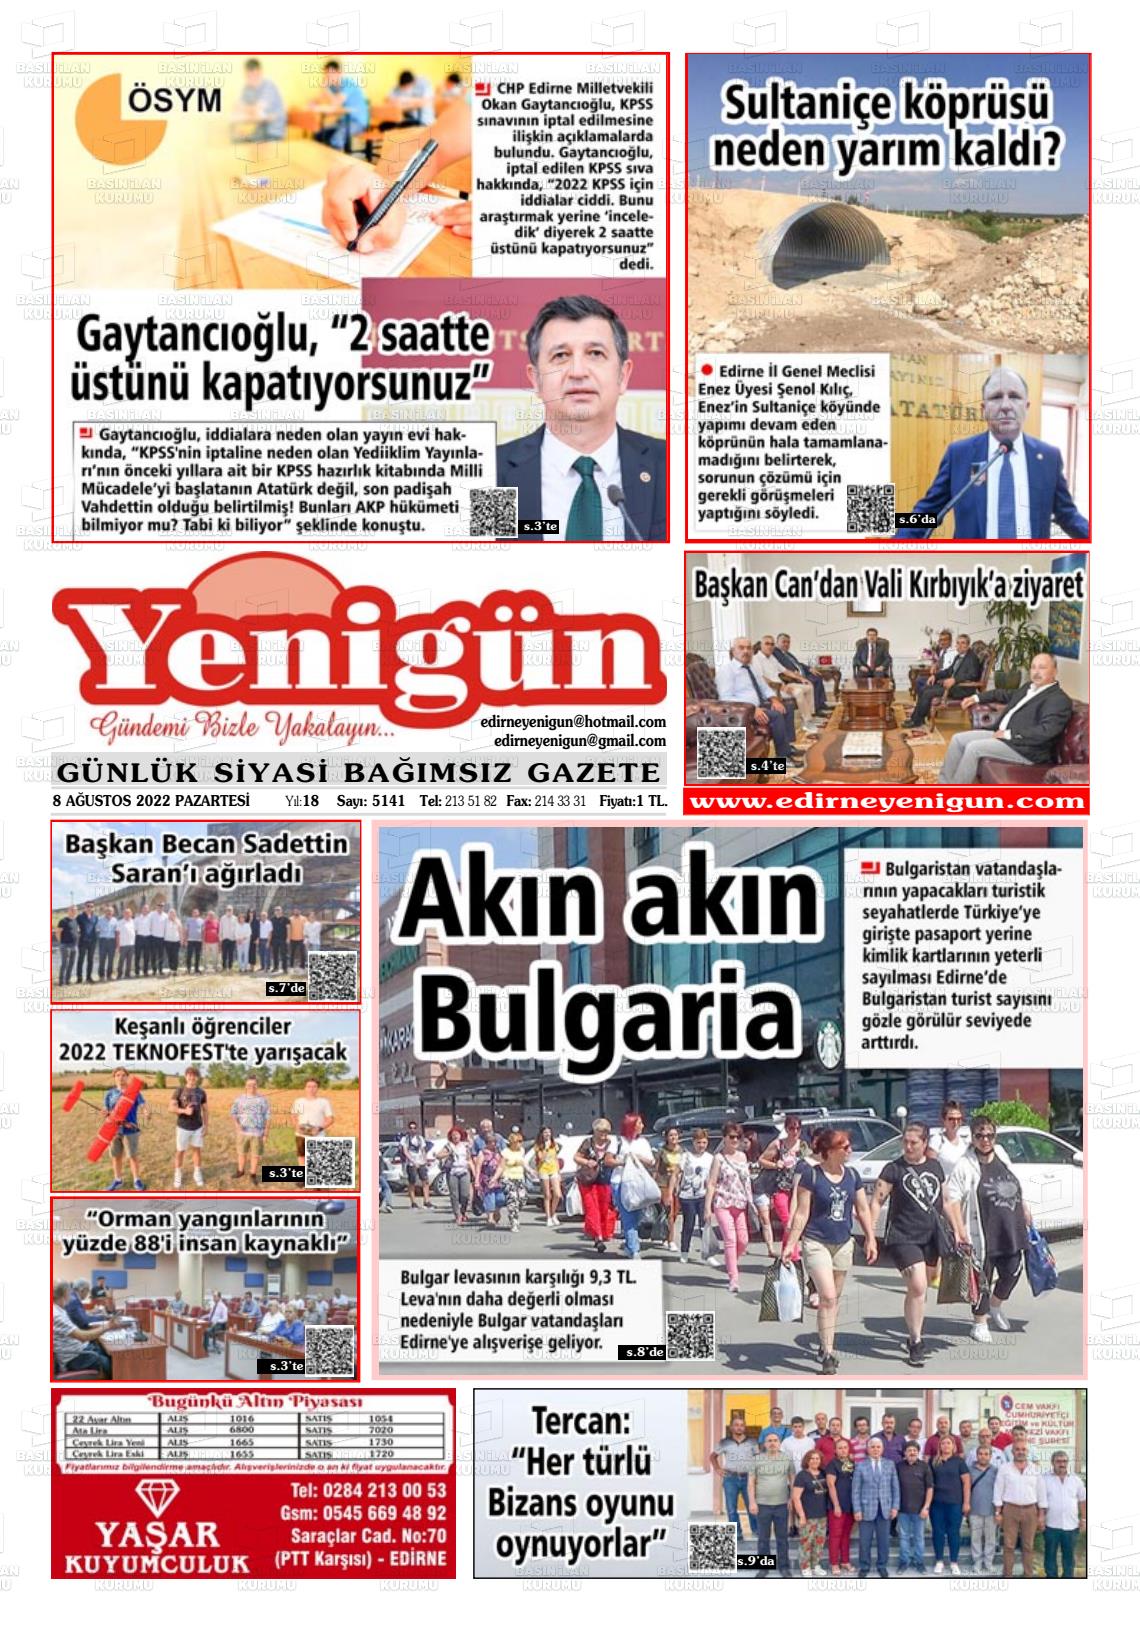 08 Ağustos 2022 Edirne Yenigün Gazete Manşeti